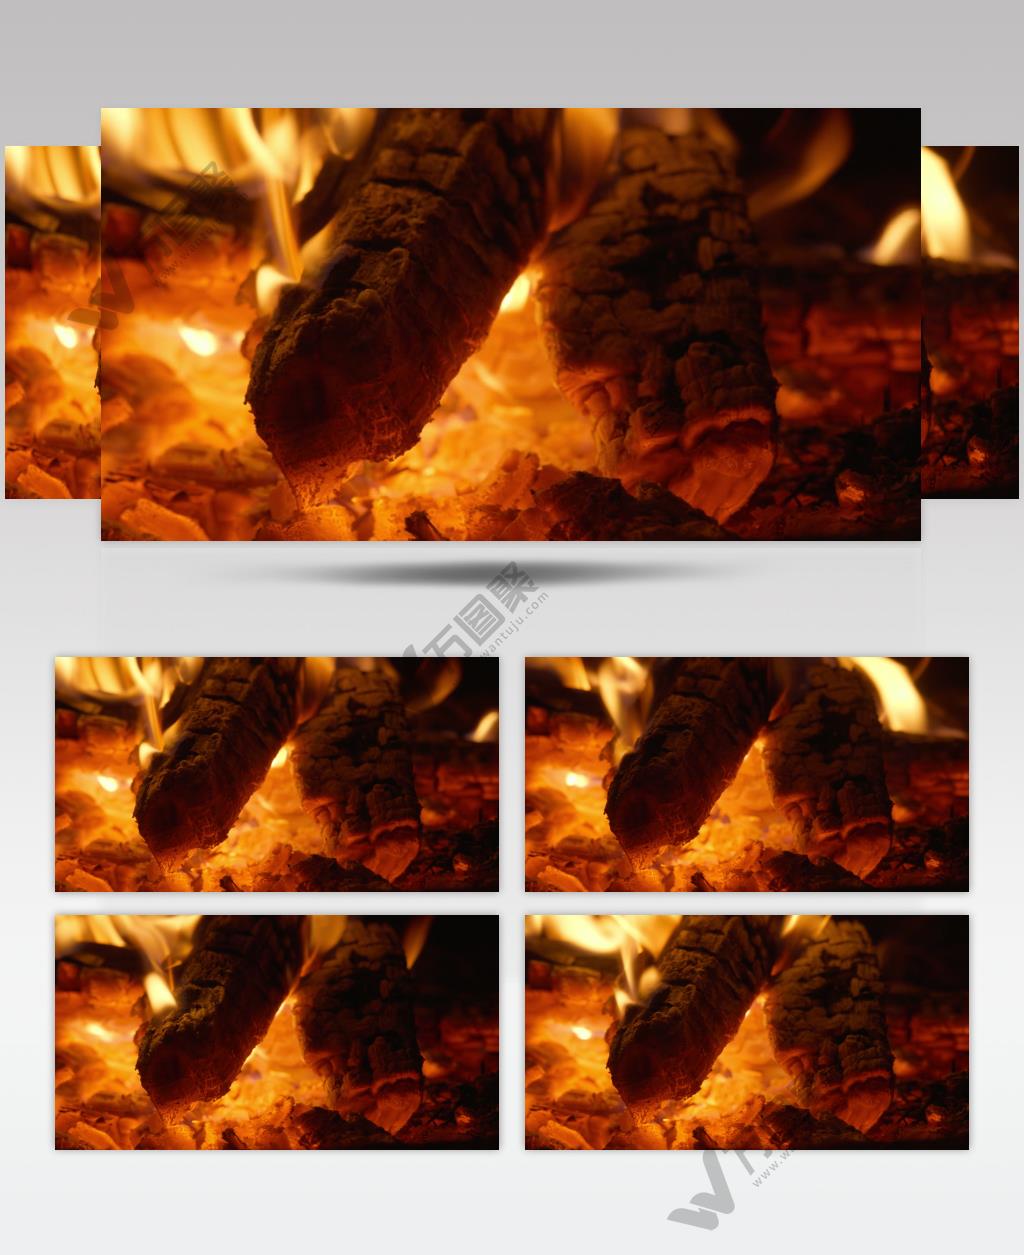 燃烧的木炭火焰篝火堆柴火苗